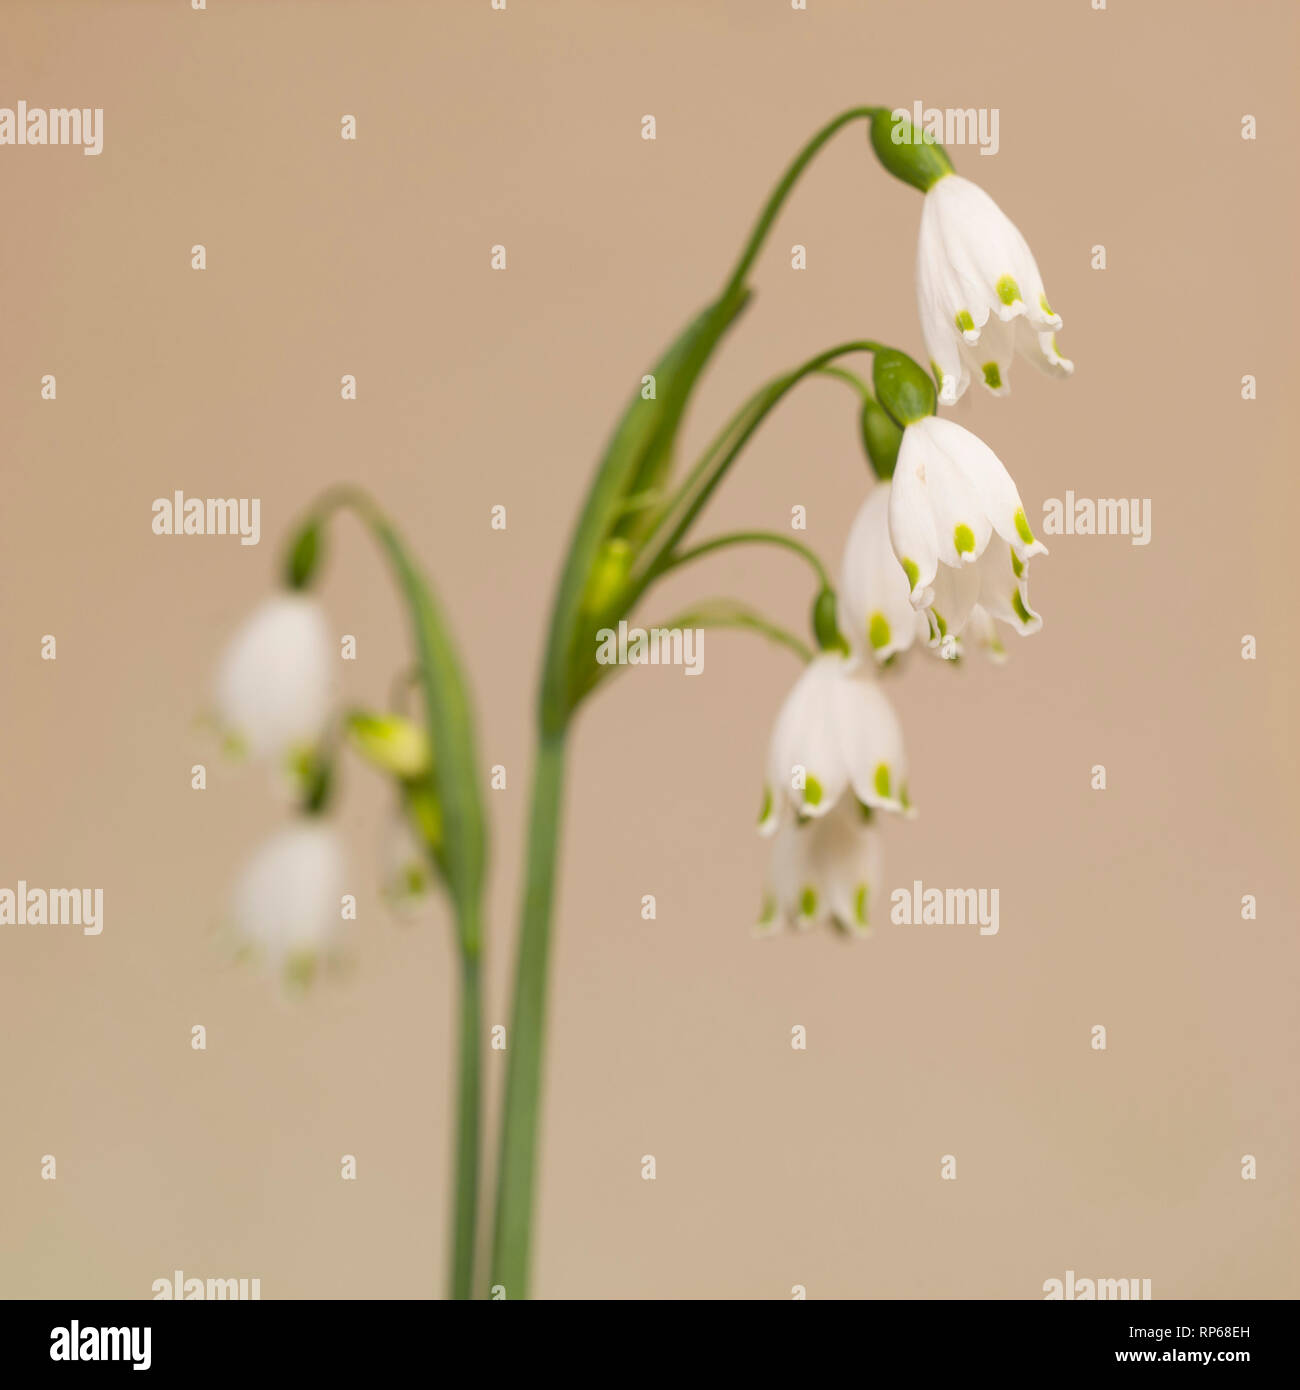 Flocon de neige de printemps Leucojum vernum, fleurs, contre fond beige Banque D'Images